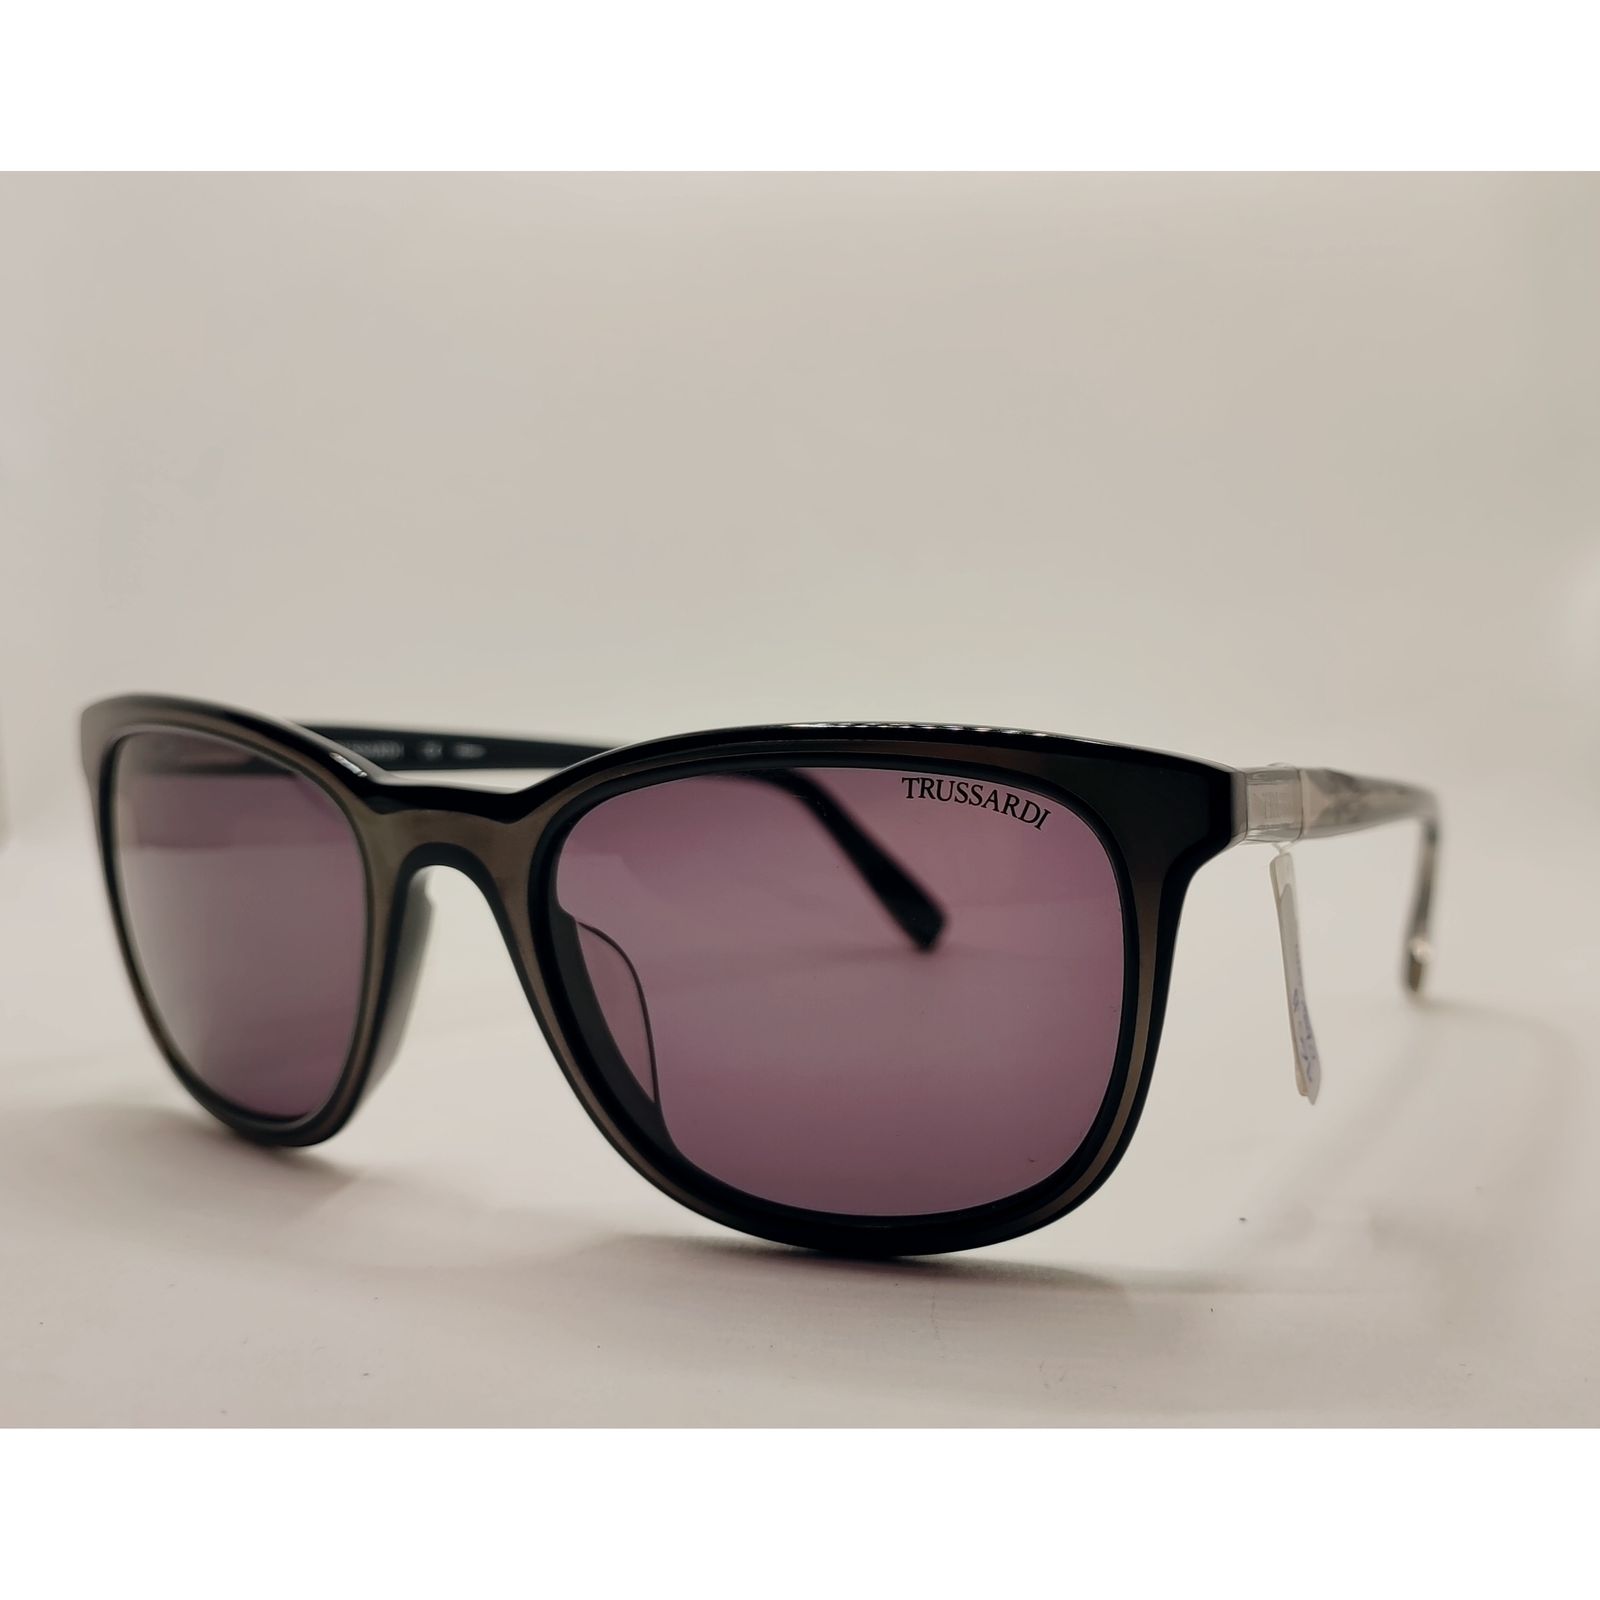 عینک آفتابی زنانه تروساردی مدل TR12942 -  - 2